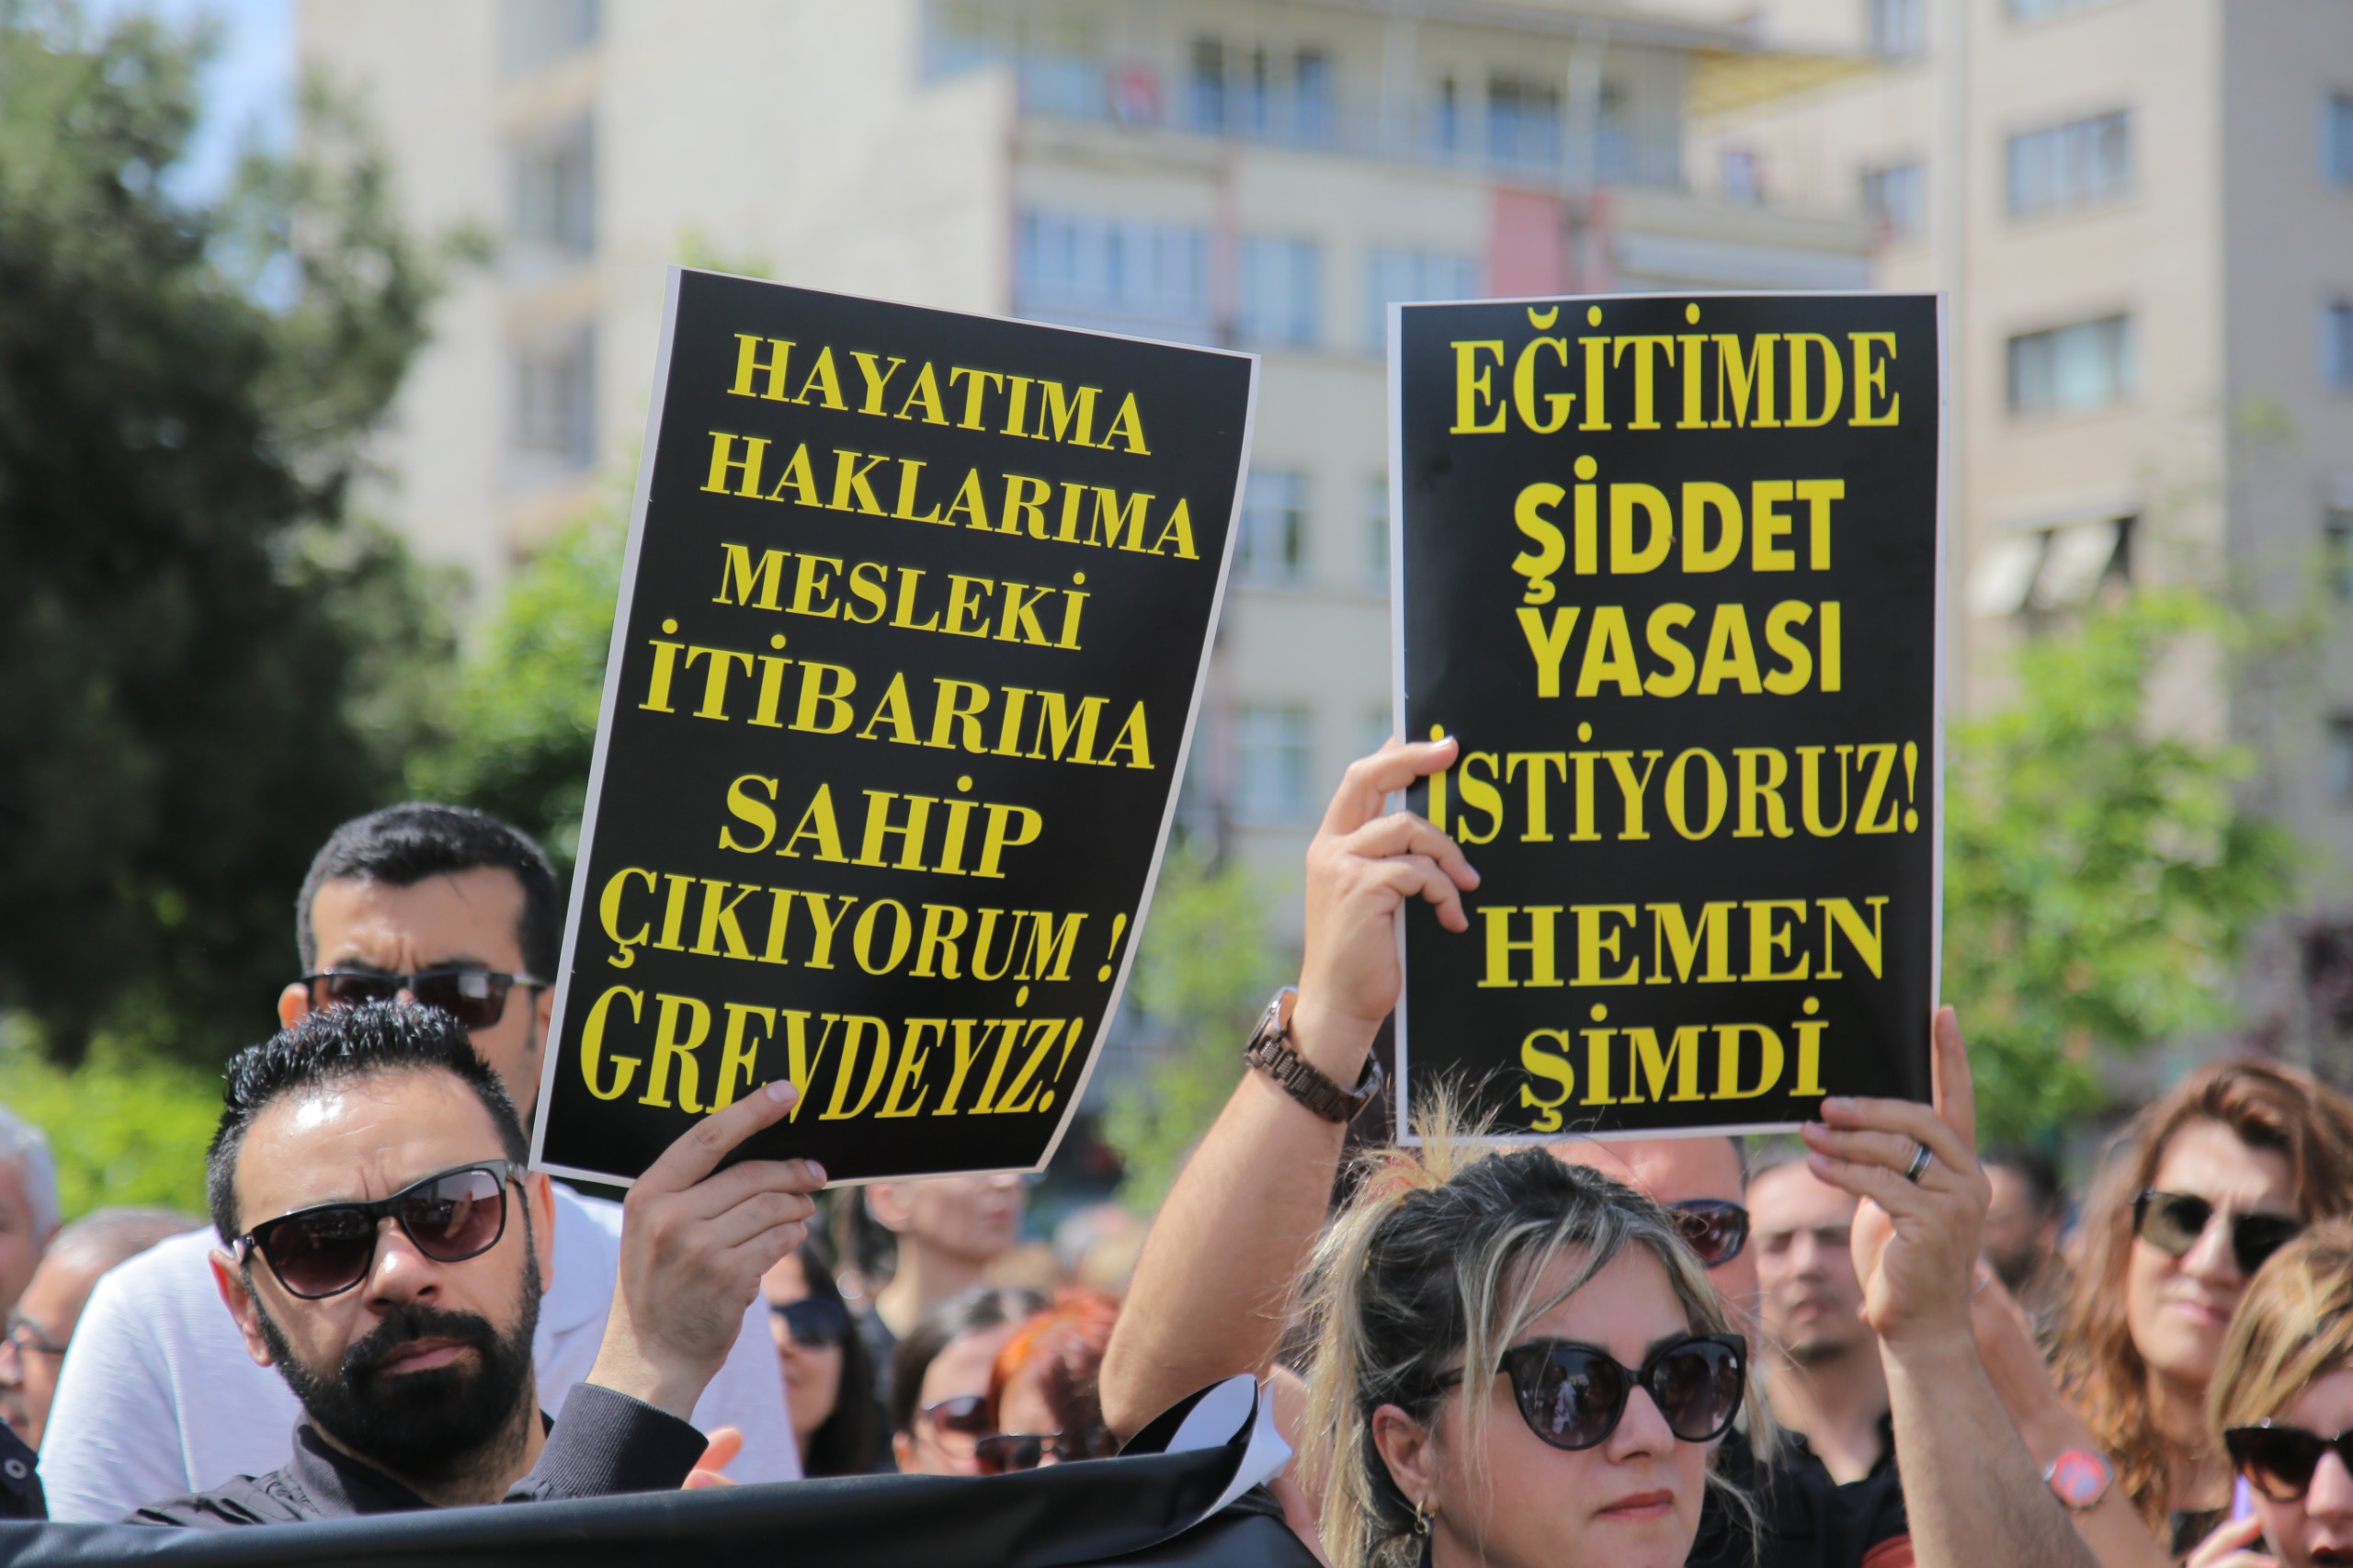 Eskişehir'de, 20 Aralık 2022 tarihinde İstanbul Eyüpsultan'da öğrencisi tarafından silahla öldürülen okul müdürü İbrahim Oktugan için eğitim emekçileri bir araya geldi. Sendika üyesi binlerce öğretmenin katıldığı protestolar Ulus Anıtı önünde gerçekleşti.

Eğitim Sen, Eğitim İş, Özel Sektör Öğretmenleri Sendikası, Hürriyetçi Eğitim Sen, Tüm Öğrenci Velileri Dayanışma Derneği ve Tüm Eğitim Çalışanları Sendikası üyesi öğretmenler, cinayeti kınamak ve çalışma koşullarının iyileştirilmesi için taleplerini dile getirmek için bir araya geldi. Öğretmenlere, öğrenciler ve veliler de destek verdi.

Eğitimciler, "Önlüklerimize kan bulaştı. Artık yeter! Can korkusuyla çalışmak istemiyoruz" diyerek Milli Eğitim Bakanı Yusuf Tekin'e istifa çağrısında bulundu.

Eğitim sendikaları, Oktugan'ın öldürülmesinin ardından Tüm Türkiye'de iş bırakmıştı.

Bu trajik olay, eğitim camiasında büyük üzüntü ve öfkeye yol açtı. Öğretmenler, artan şiddete ve güvensiz çalışma koşullarına karşı tepkilerini dile getirmek için seslerini yükseltmeye devam ediyorlar.